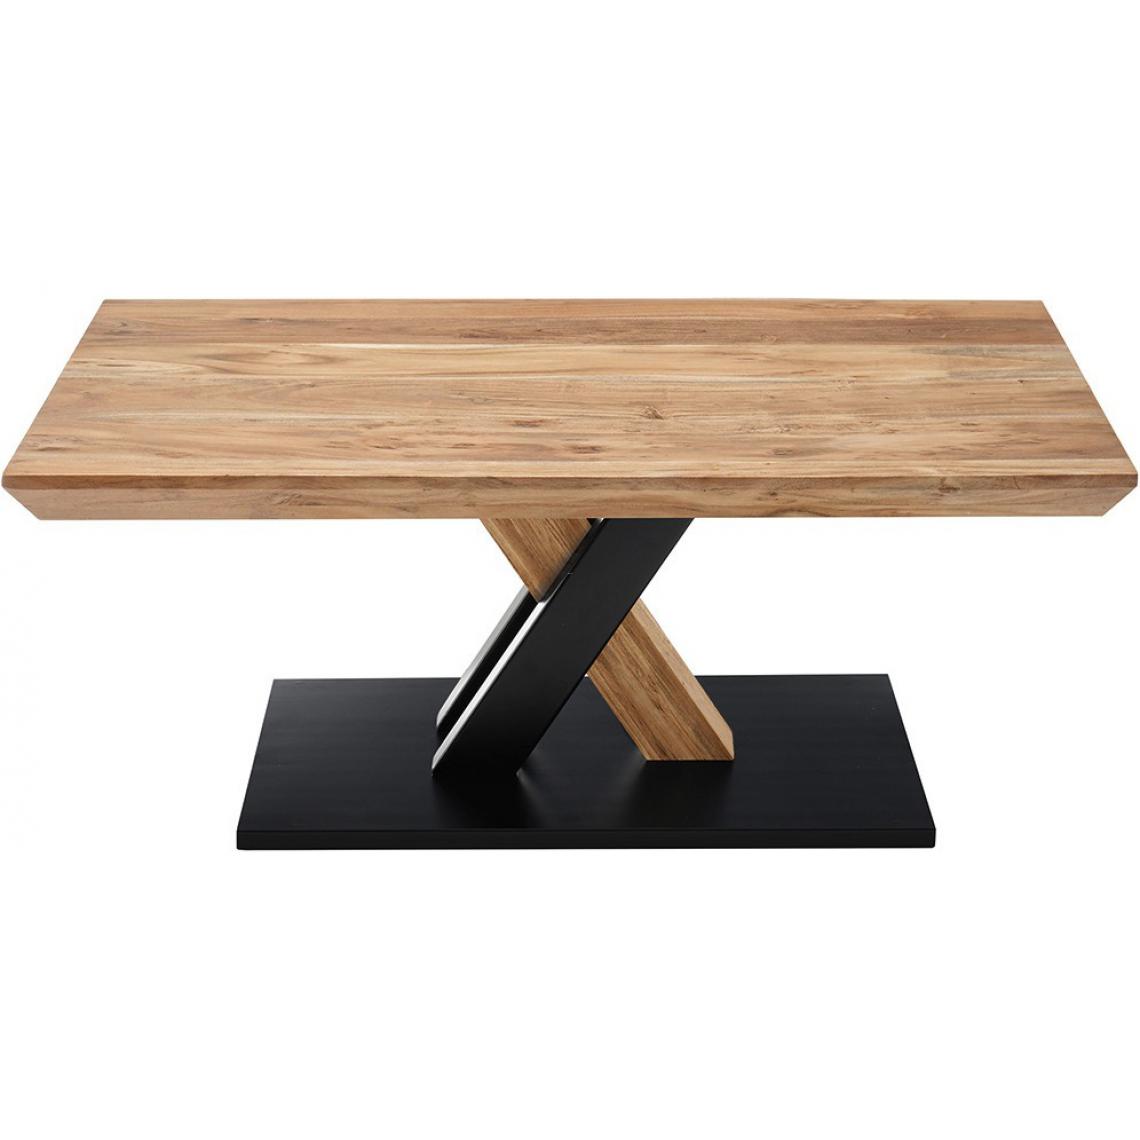 Pegane - Table basse en acacia massif laqué naturel / noir - Longueur 110 x Hauteur 45 x Profondeur 70 cm - Tables basses